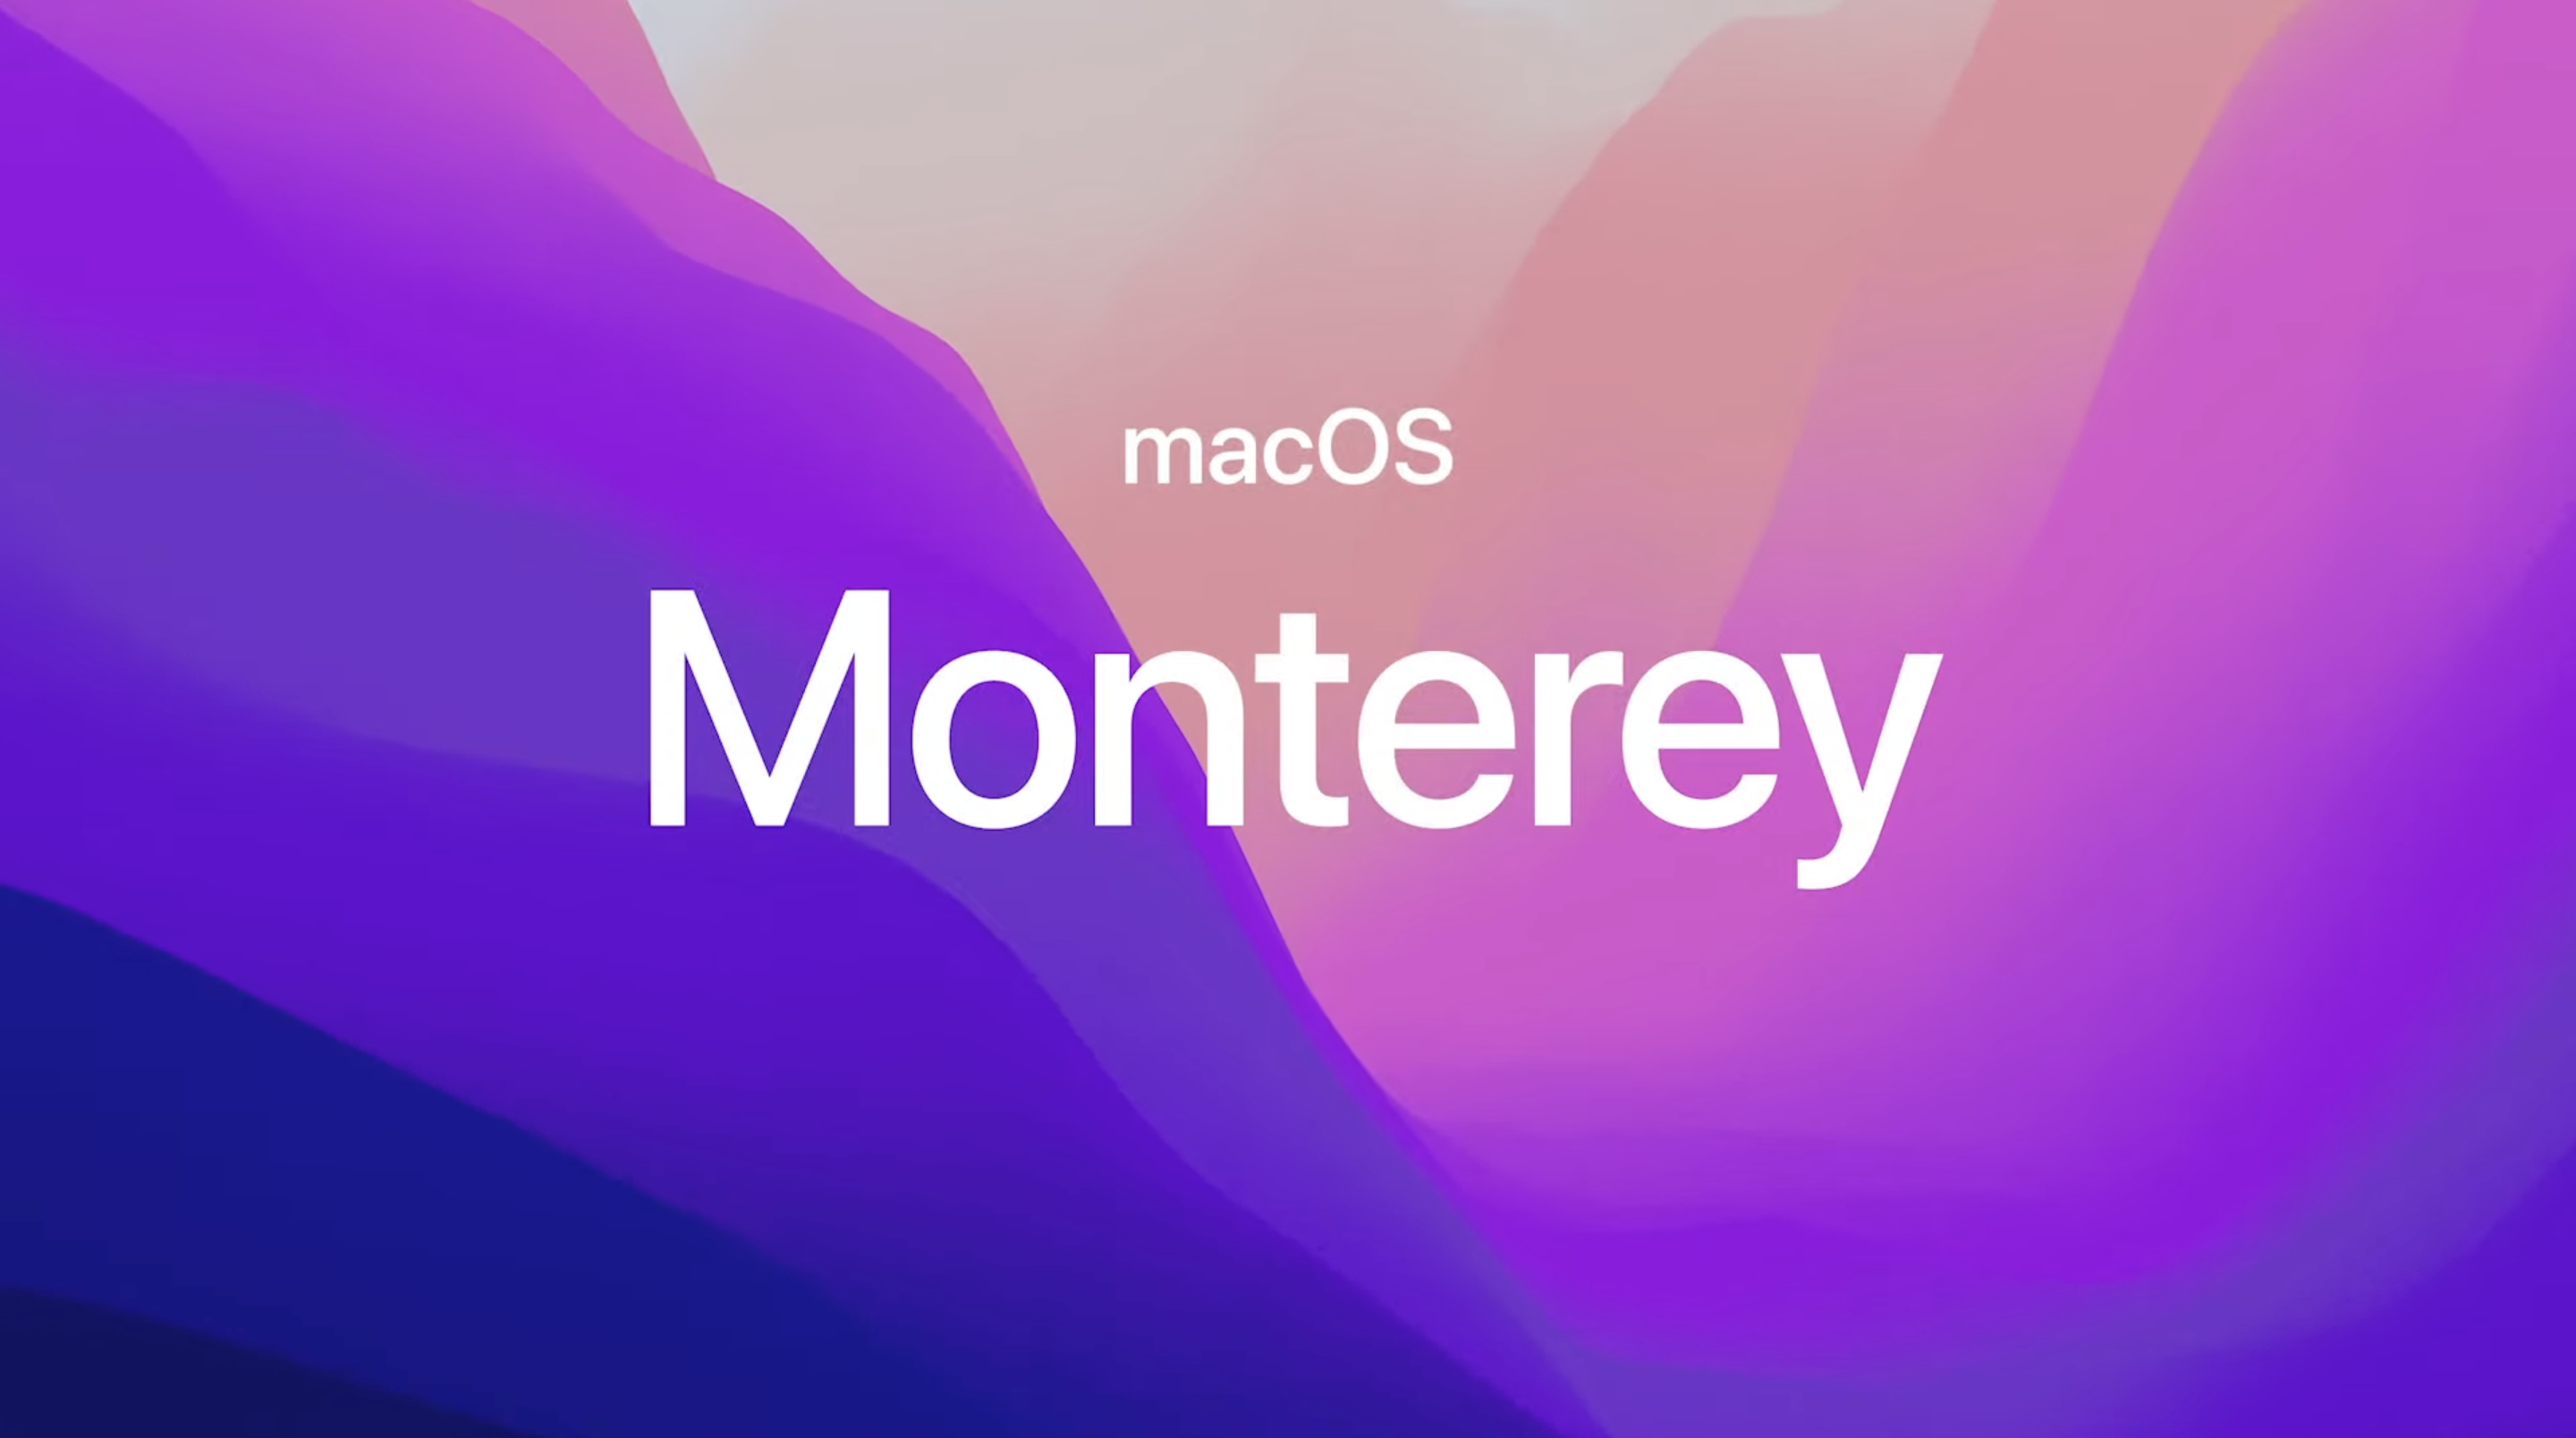 macos monterey release date 2021